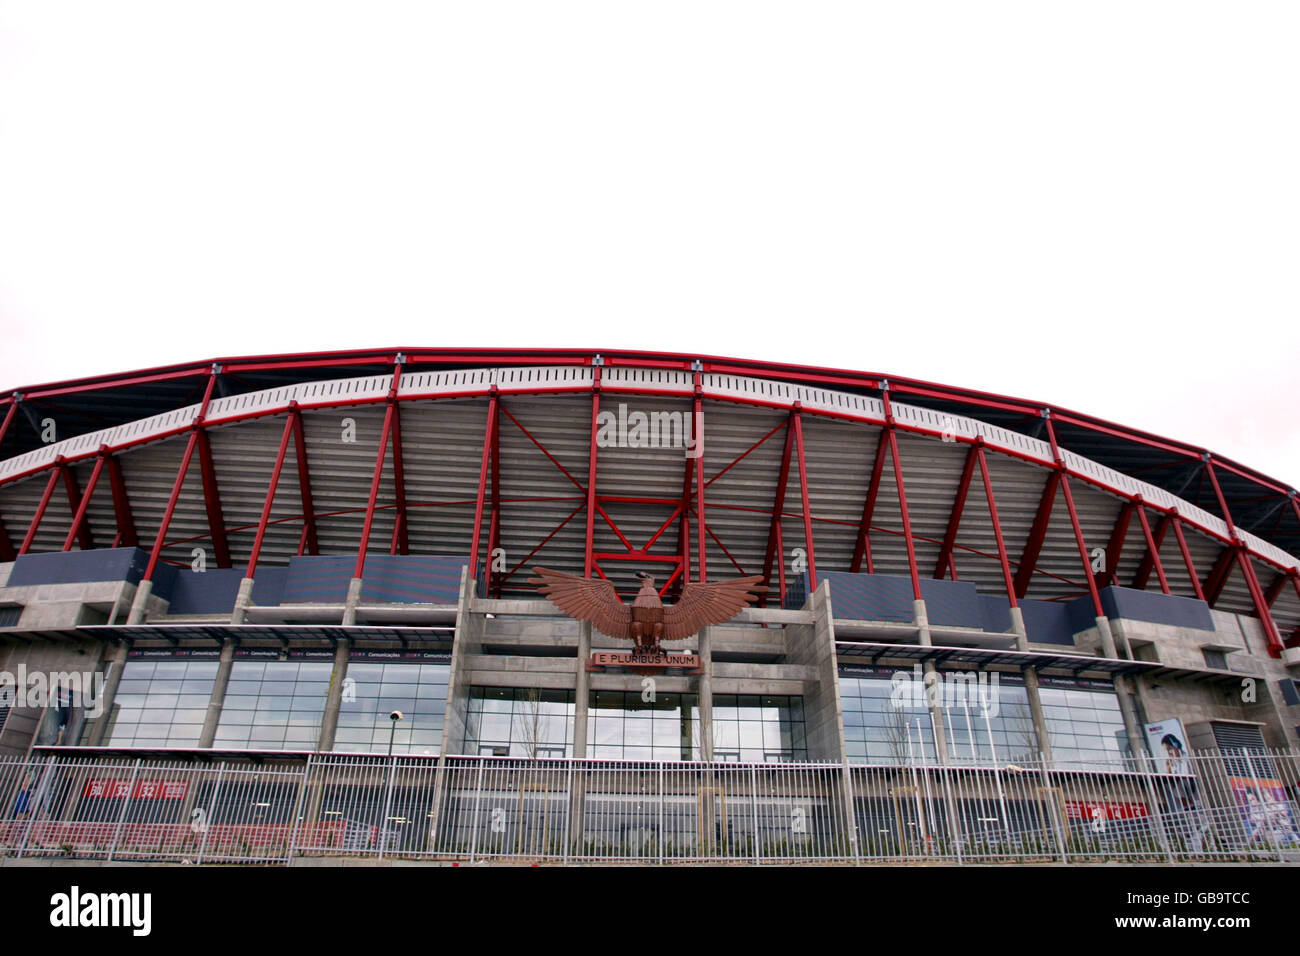 Estadio da Luz, home to Benfica and venue for Euro 2004 Championship Final in Portugal Stock Photo